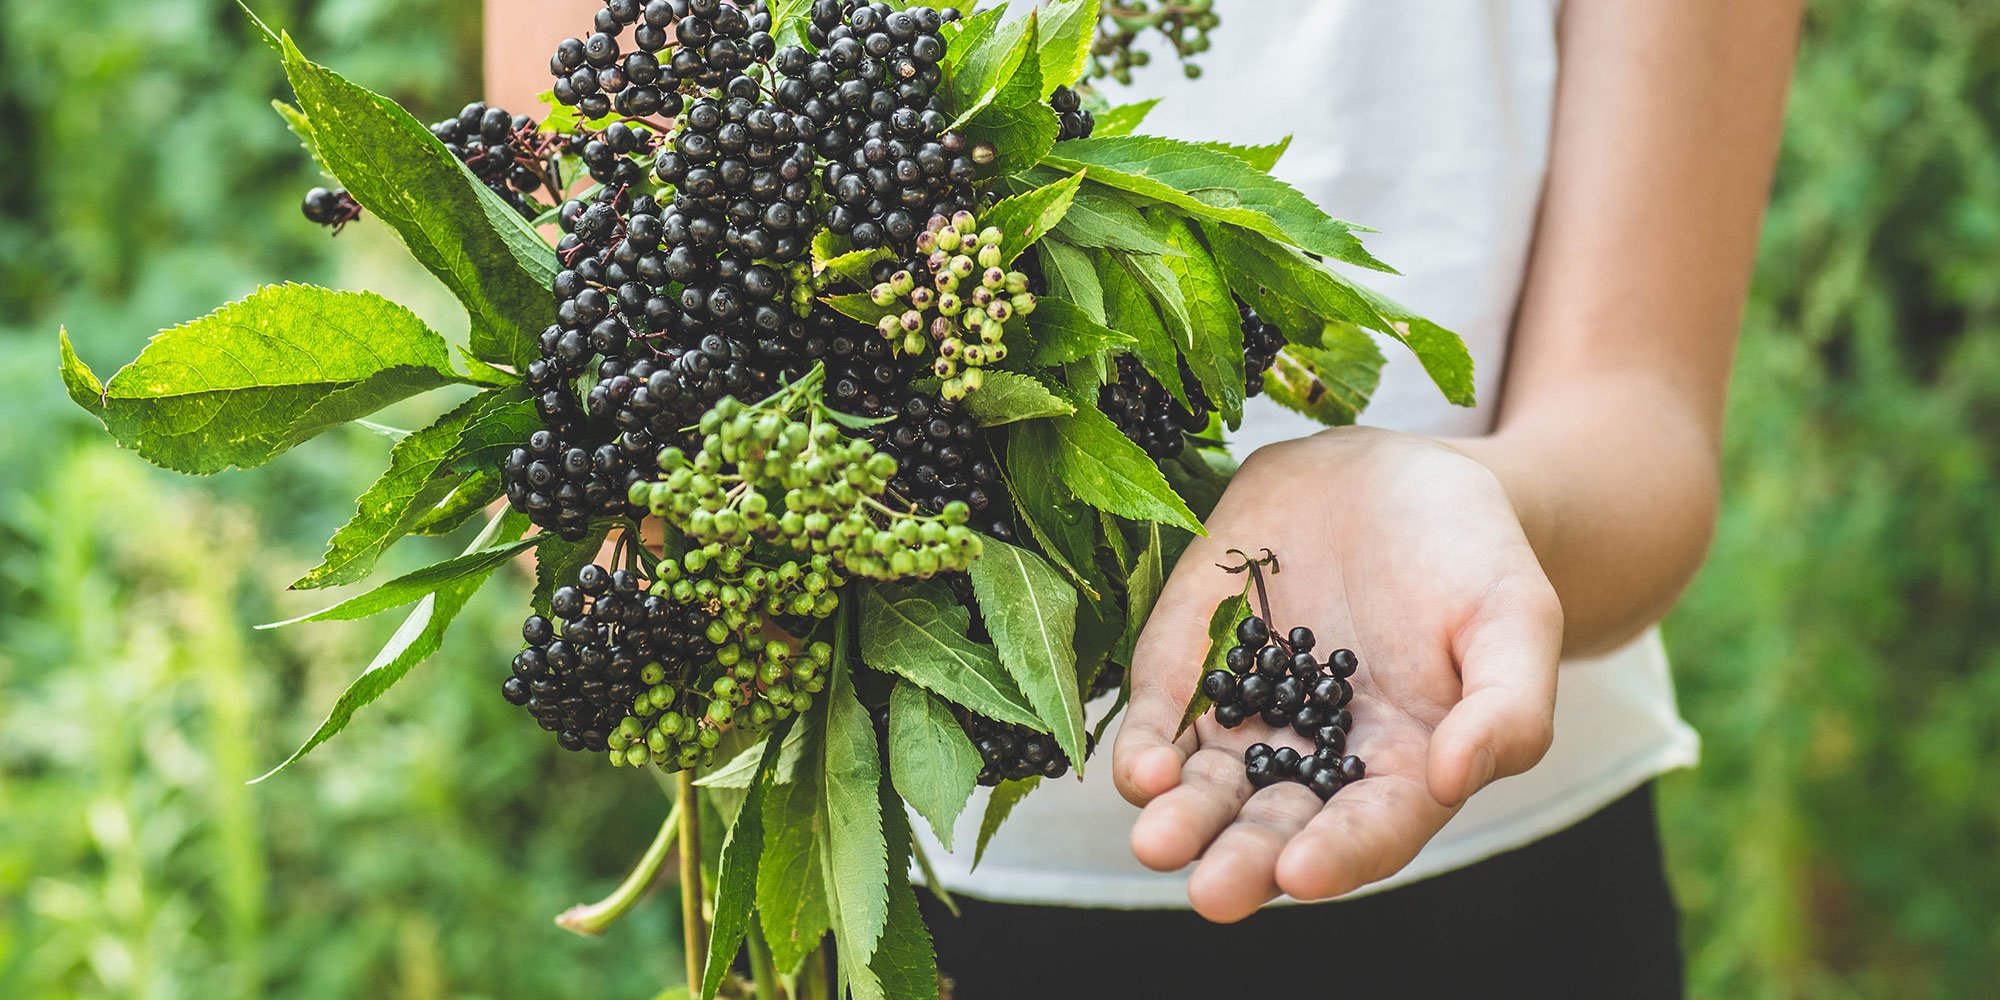 Benefits of elderberry